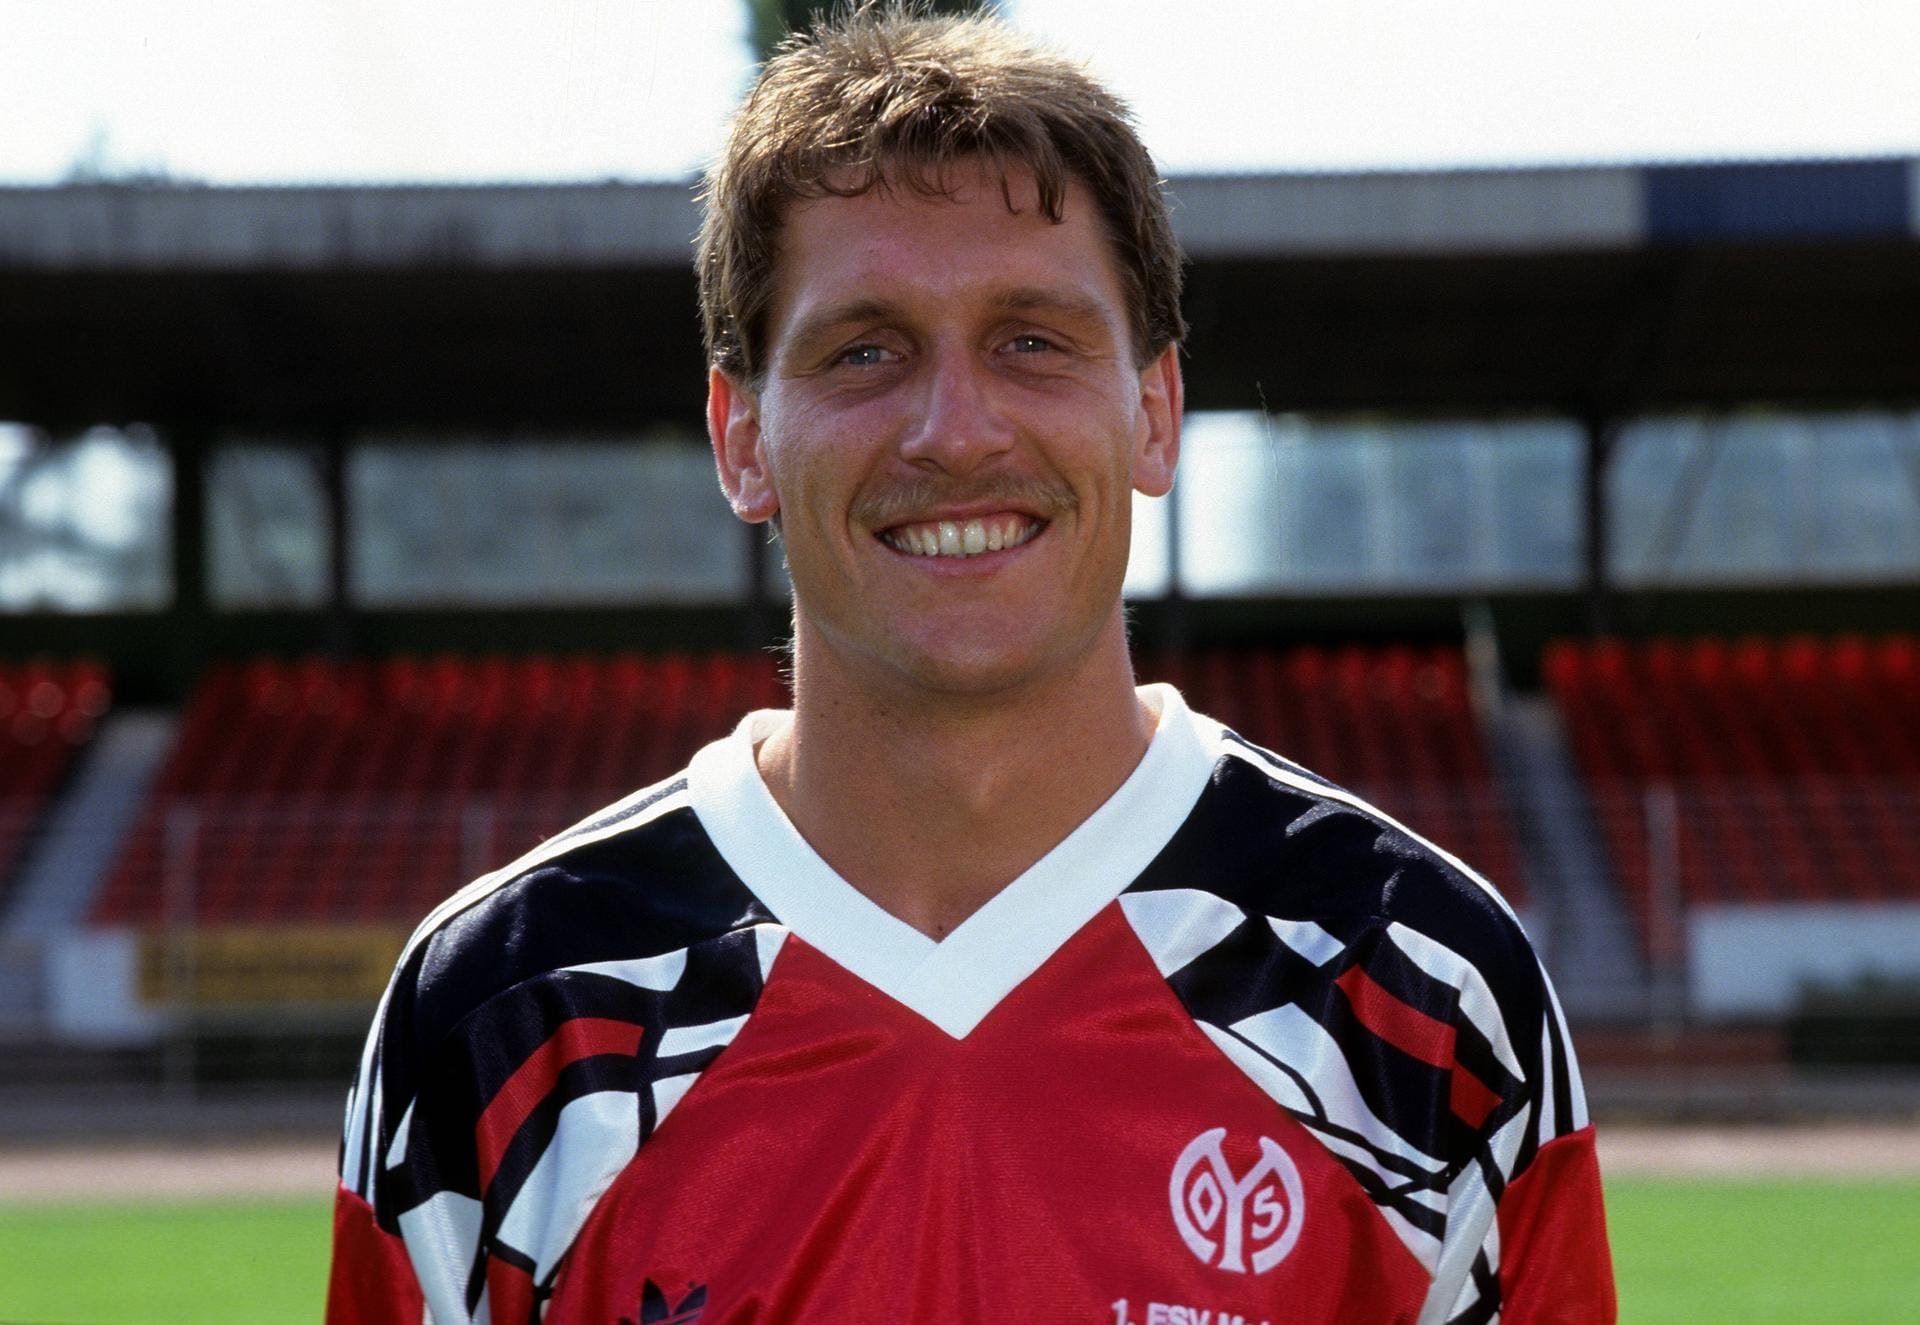 Michael Müller (1985 - 2000): Michael Müller spielte fast seine gesamte Karriere bei Mainz 05. Der Libero legte in den 90er-Jahren einen kurzen Zwischenstopp bei Wehen Wiesbaden ein. 1995/96 gehörte er zu den "Nicht-Abstiegs-Helden" und sagte zu der Zeit "So viel bin ich in meinem Leben nicht gelaufen". Müller arbeite nach seiner aktiven Karriere als Co-Trainer beim SV Wehen und bei unterklassigen Vereinen.